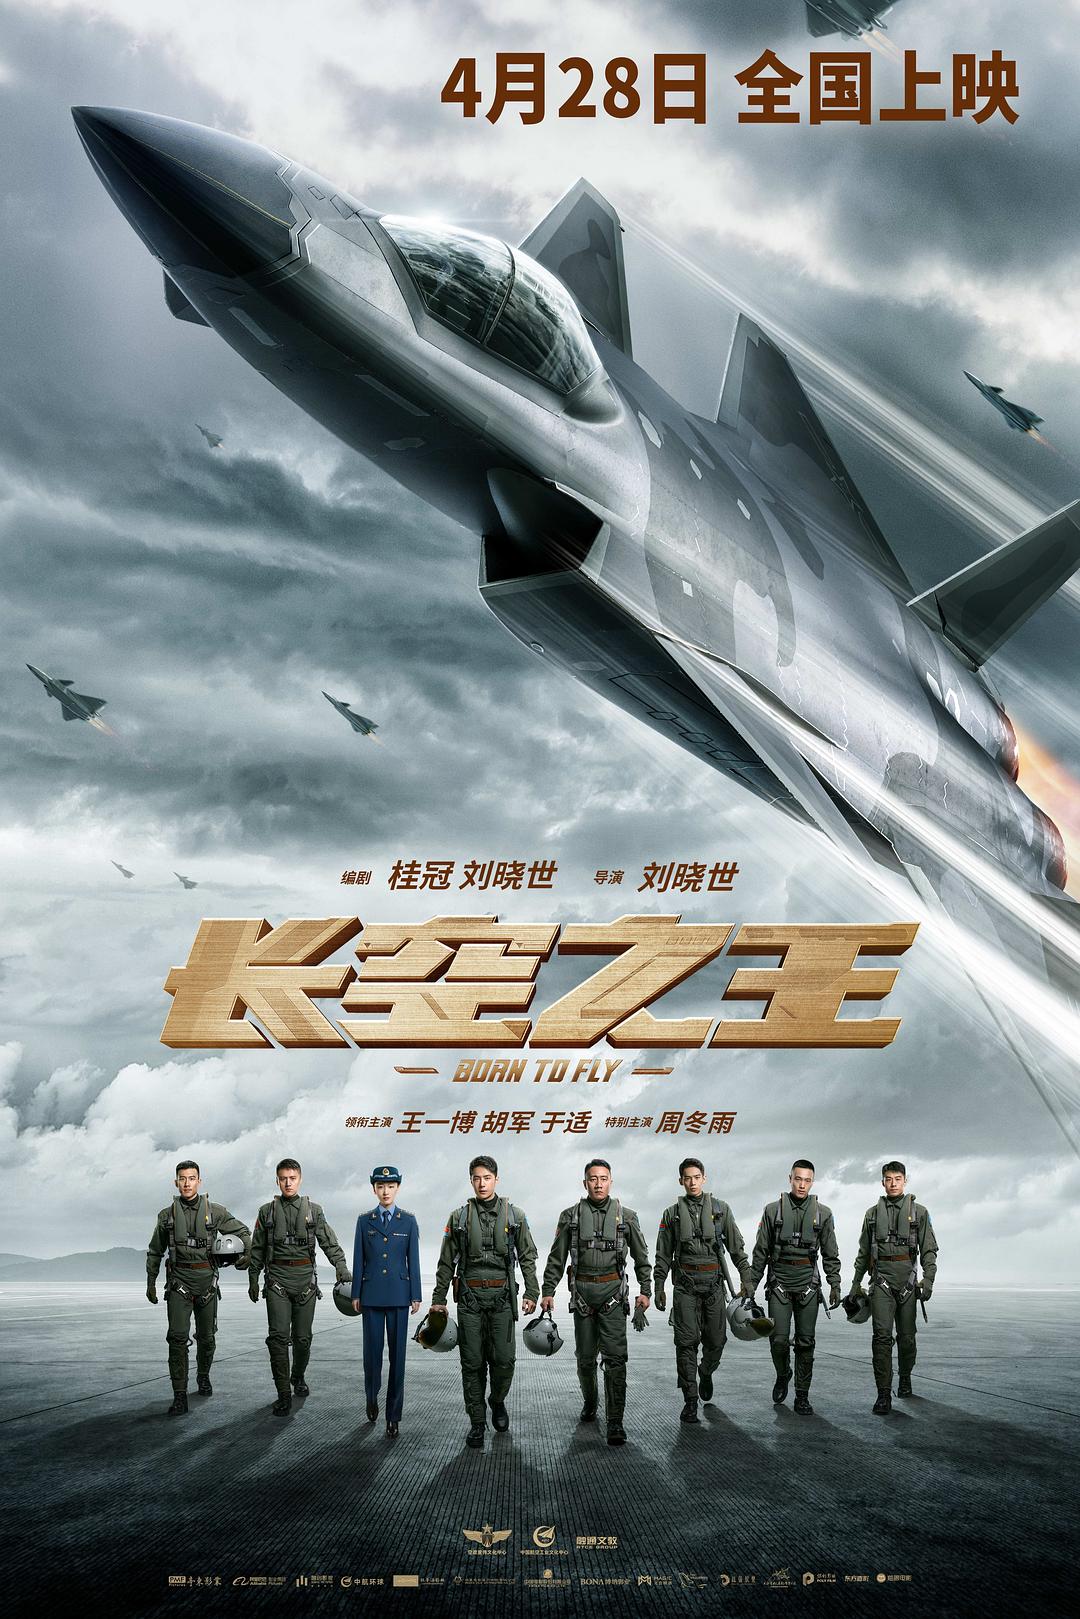 2023年剧情动作《长空之王》HD国语中文字幕迅雷下载